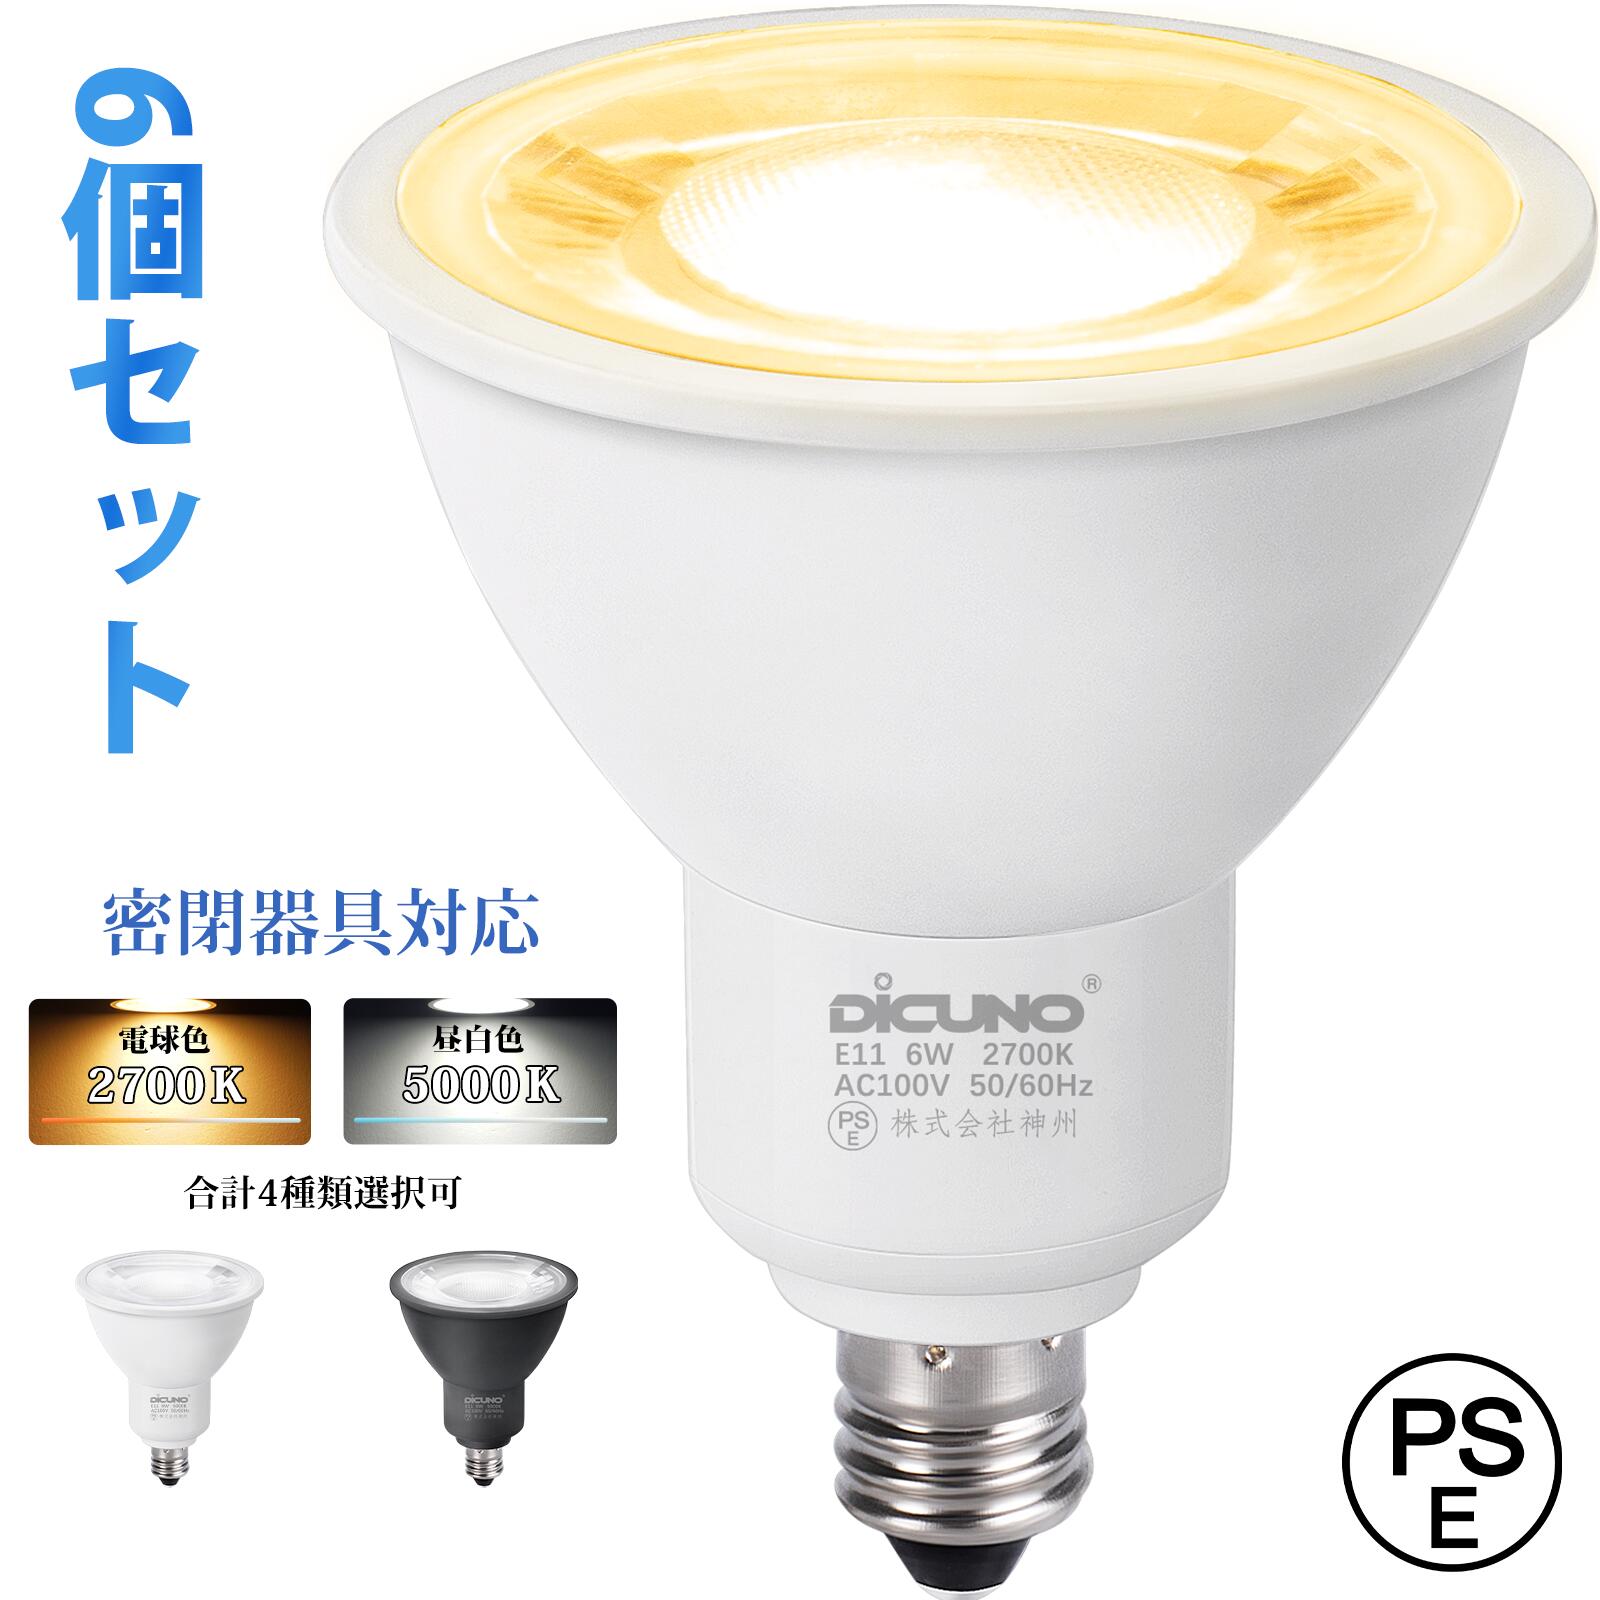 適当な価格 限定1個 DiCUNO G9 LED電球 ハロゲン電球 40W 非調光 電球色